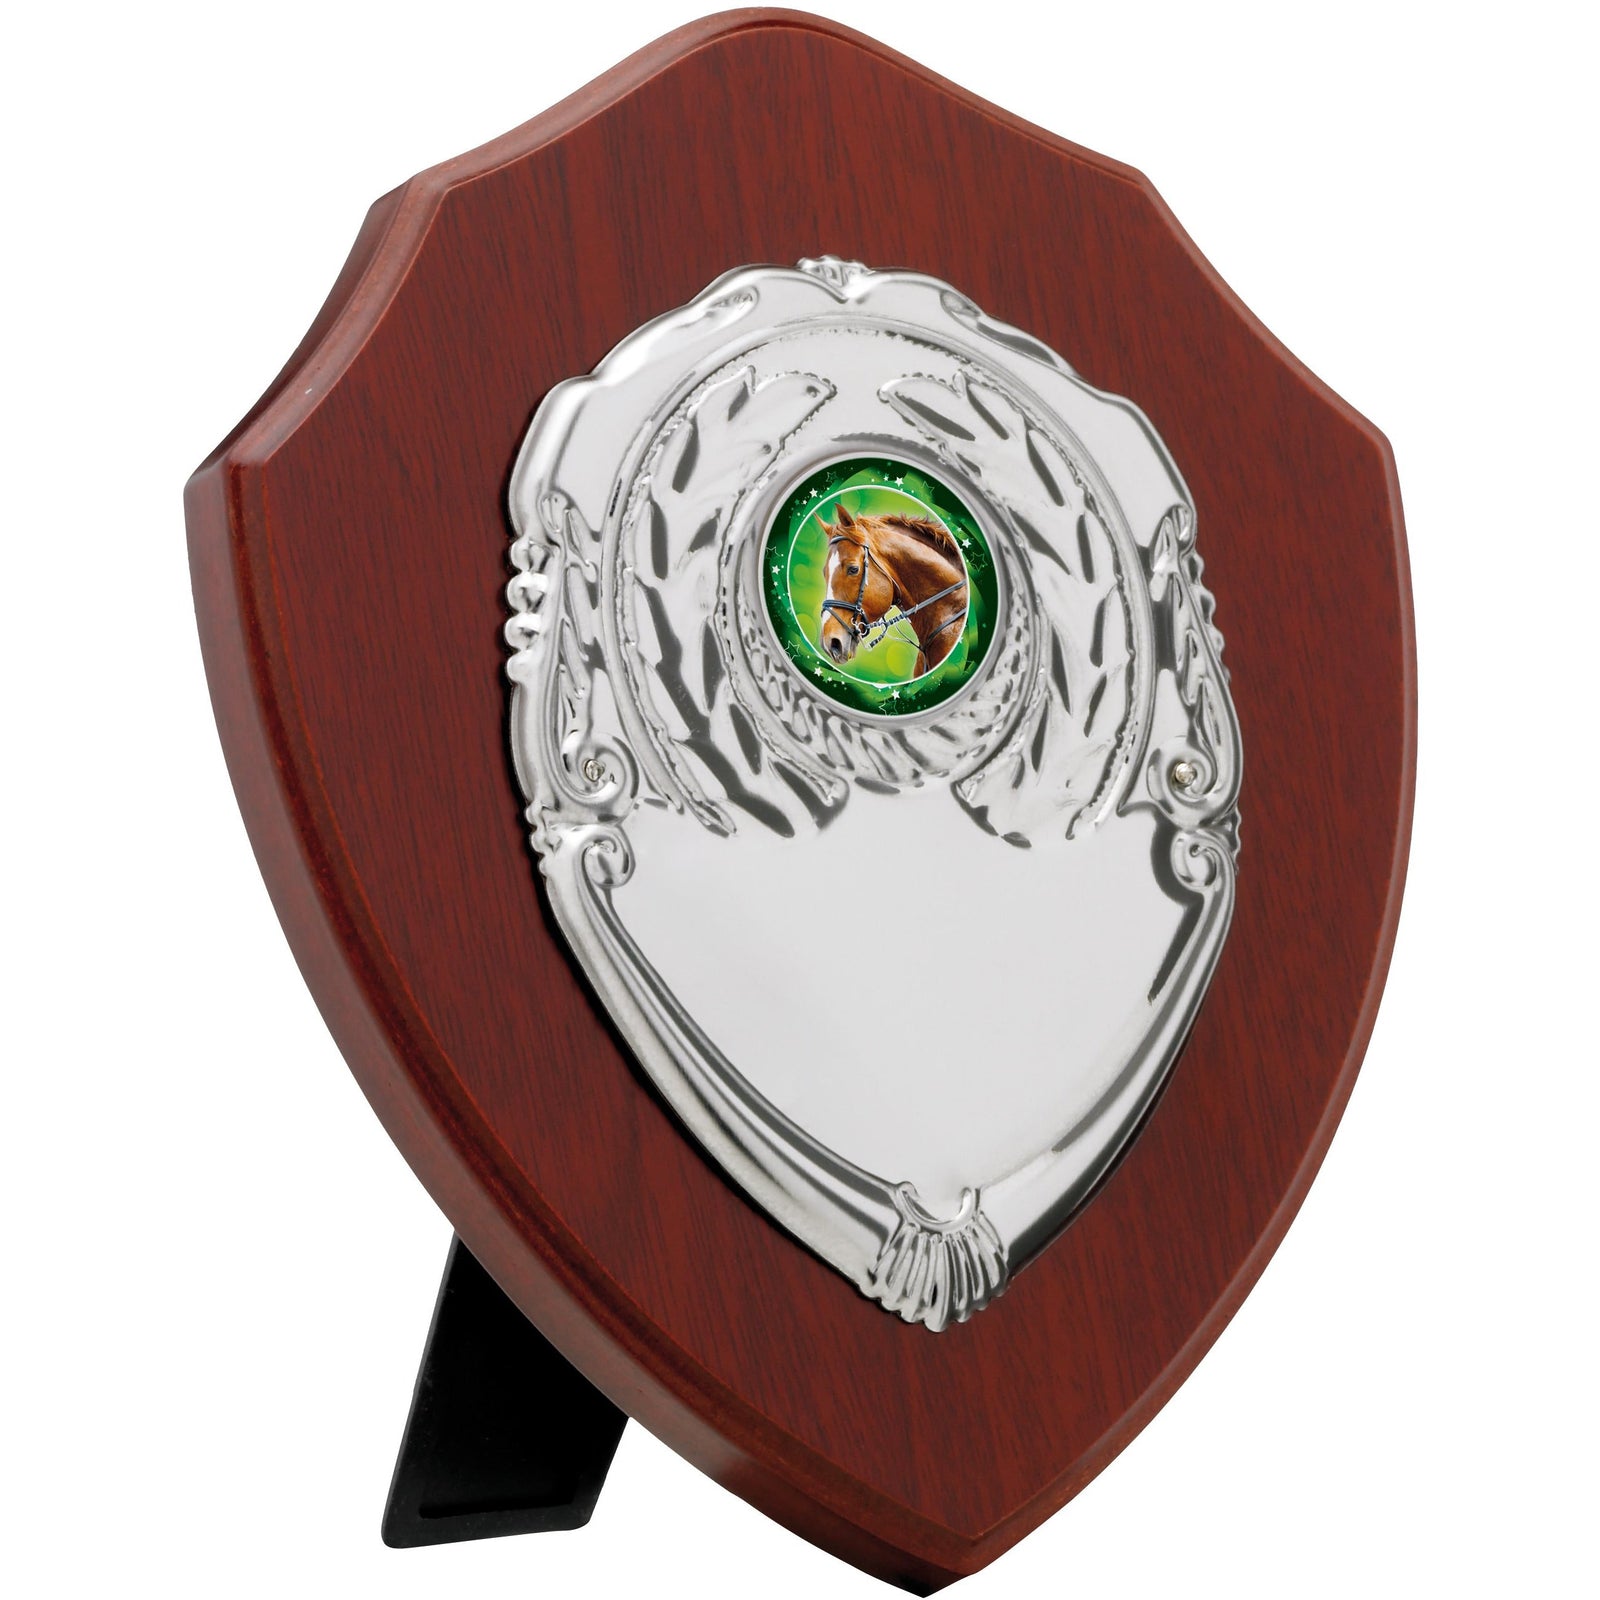 Mahogany Finish Presentation Shield Award